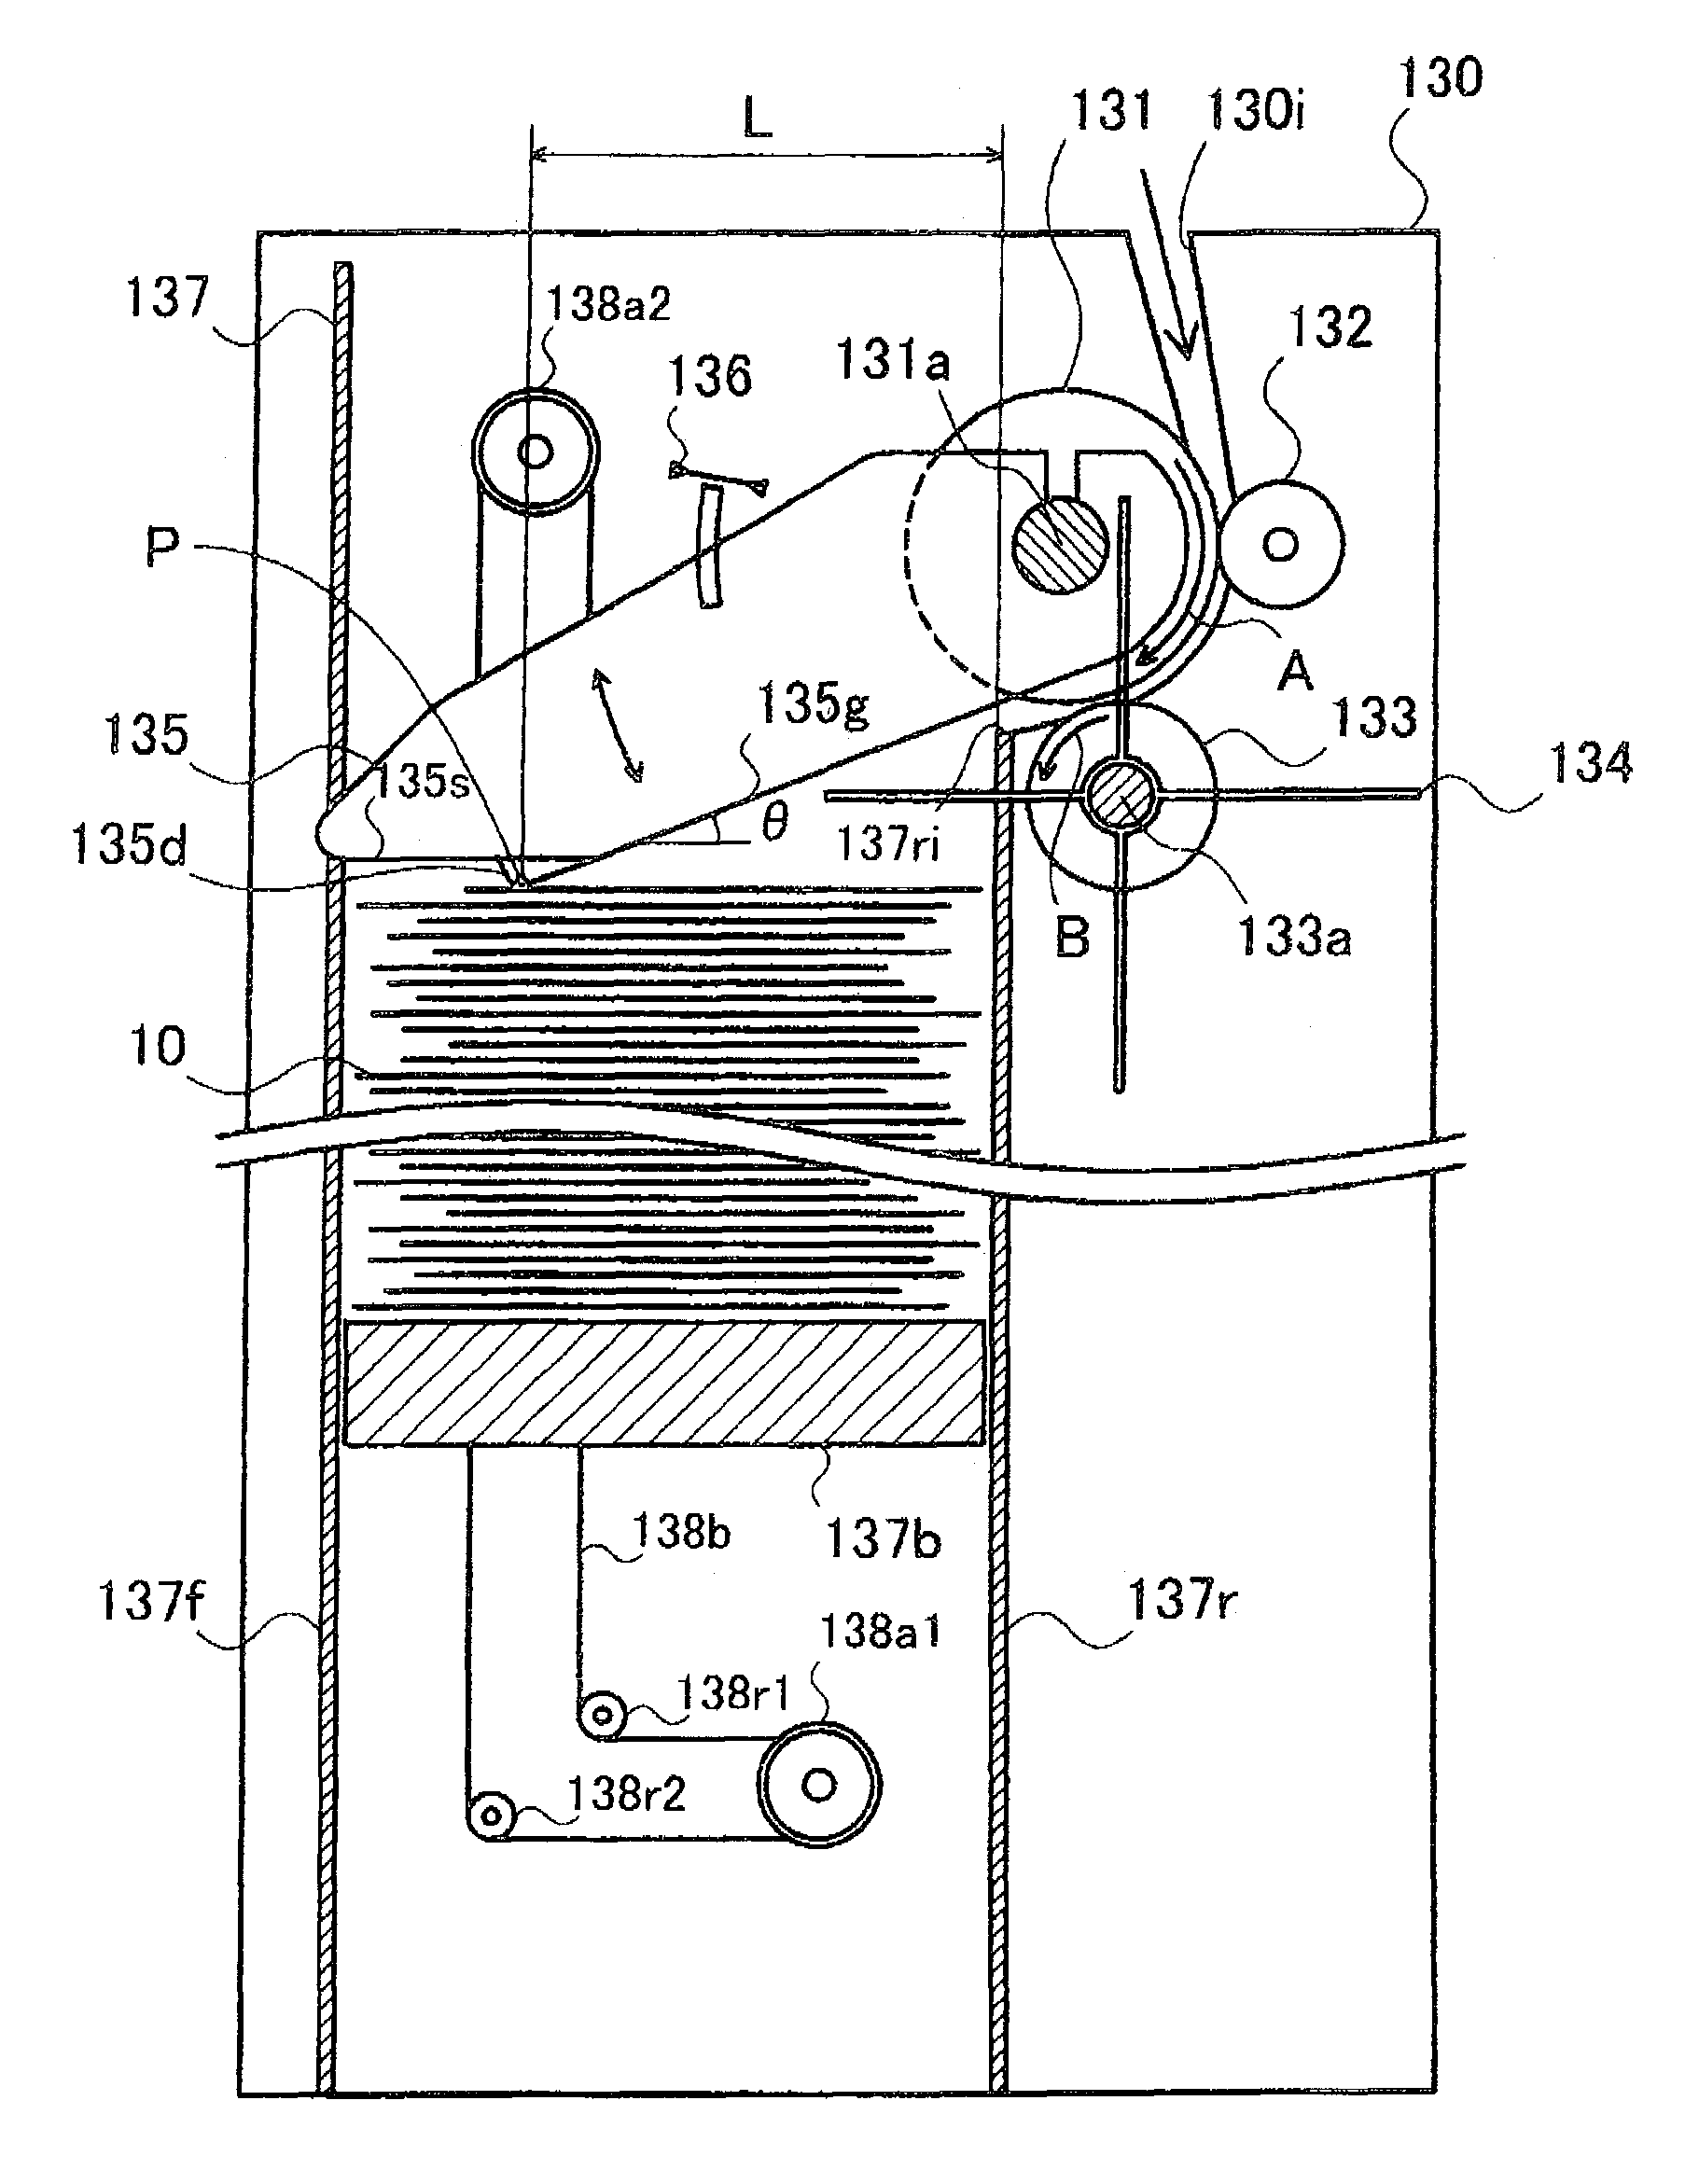 Paper sheet storing apparatus